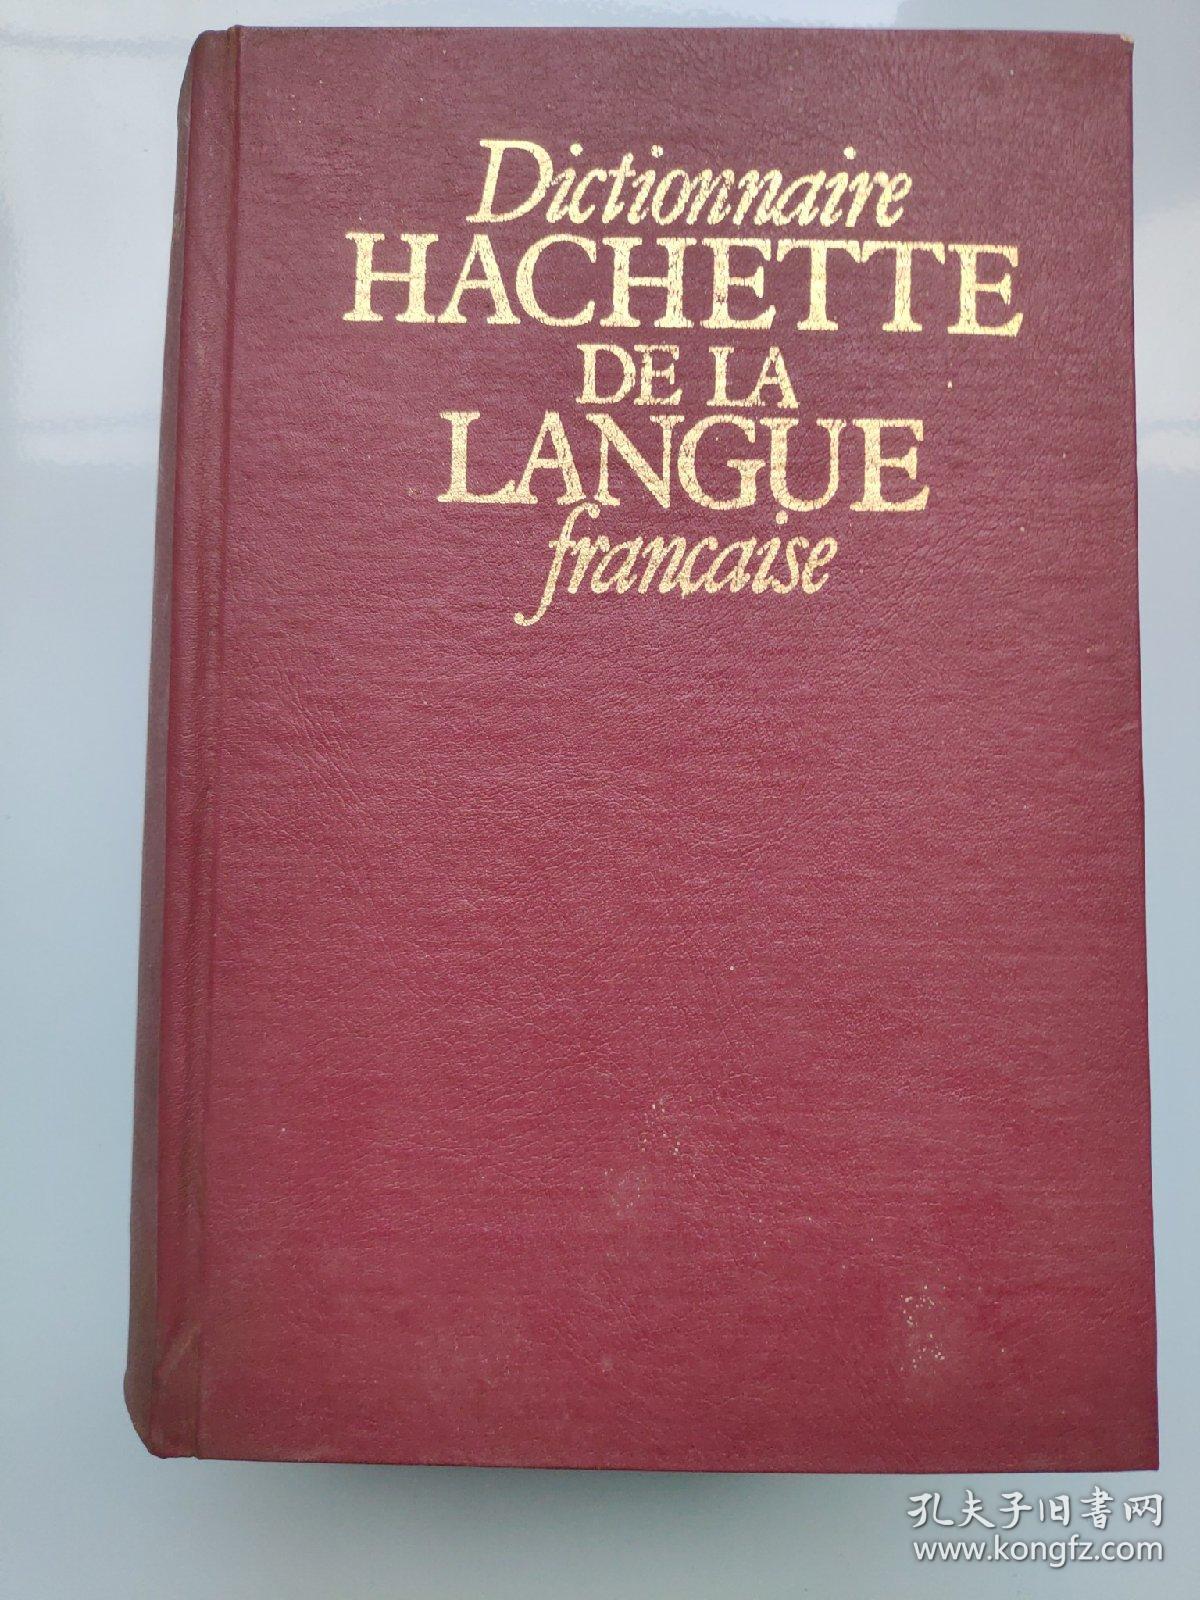 Dictionnaire HACHETTE DE LA LANGUE francaise  （ 内部交流  法语词典）